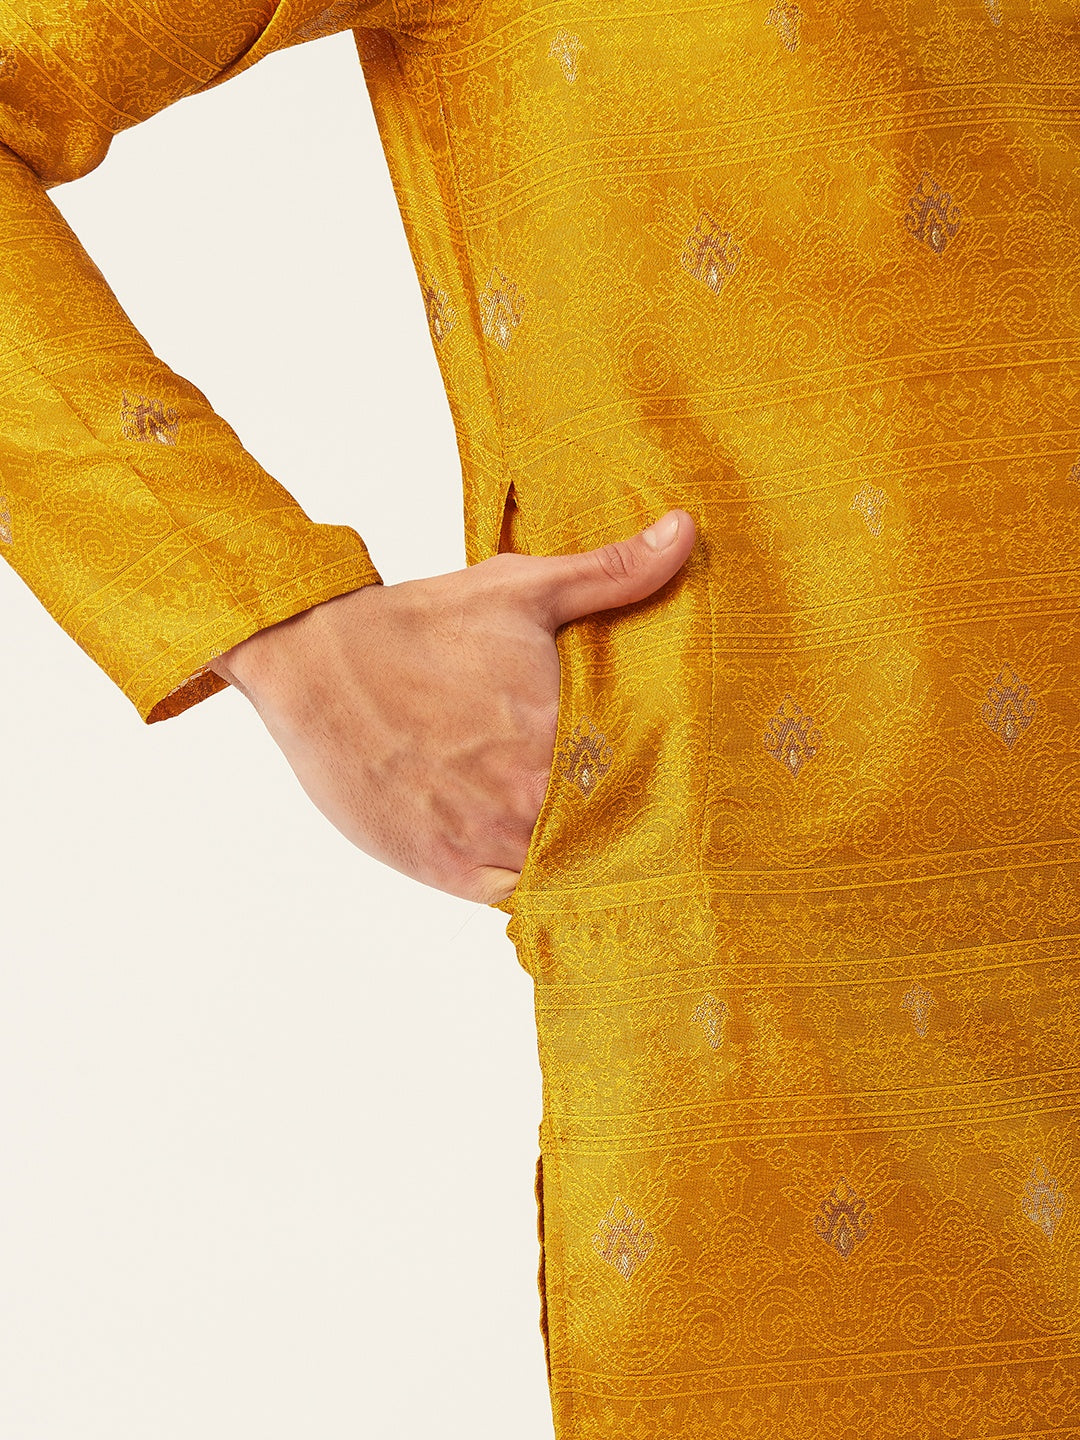 Men's Mustard Coller Embroidered Woven Design Kurta Pyjama ( JOKP 649 Mustard ) - Virat Fashions